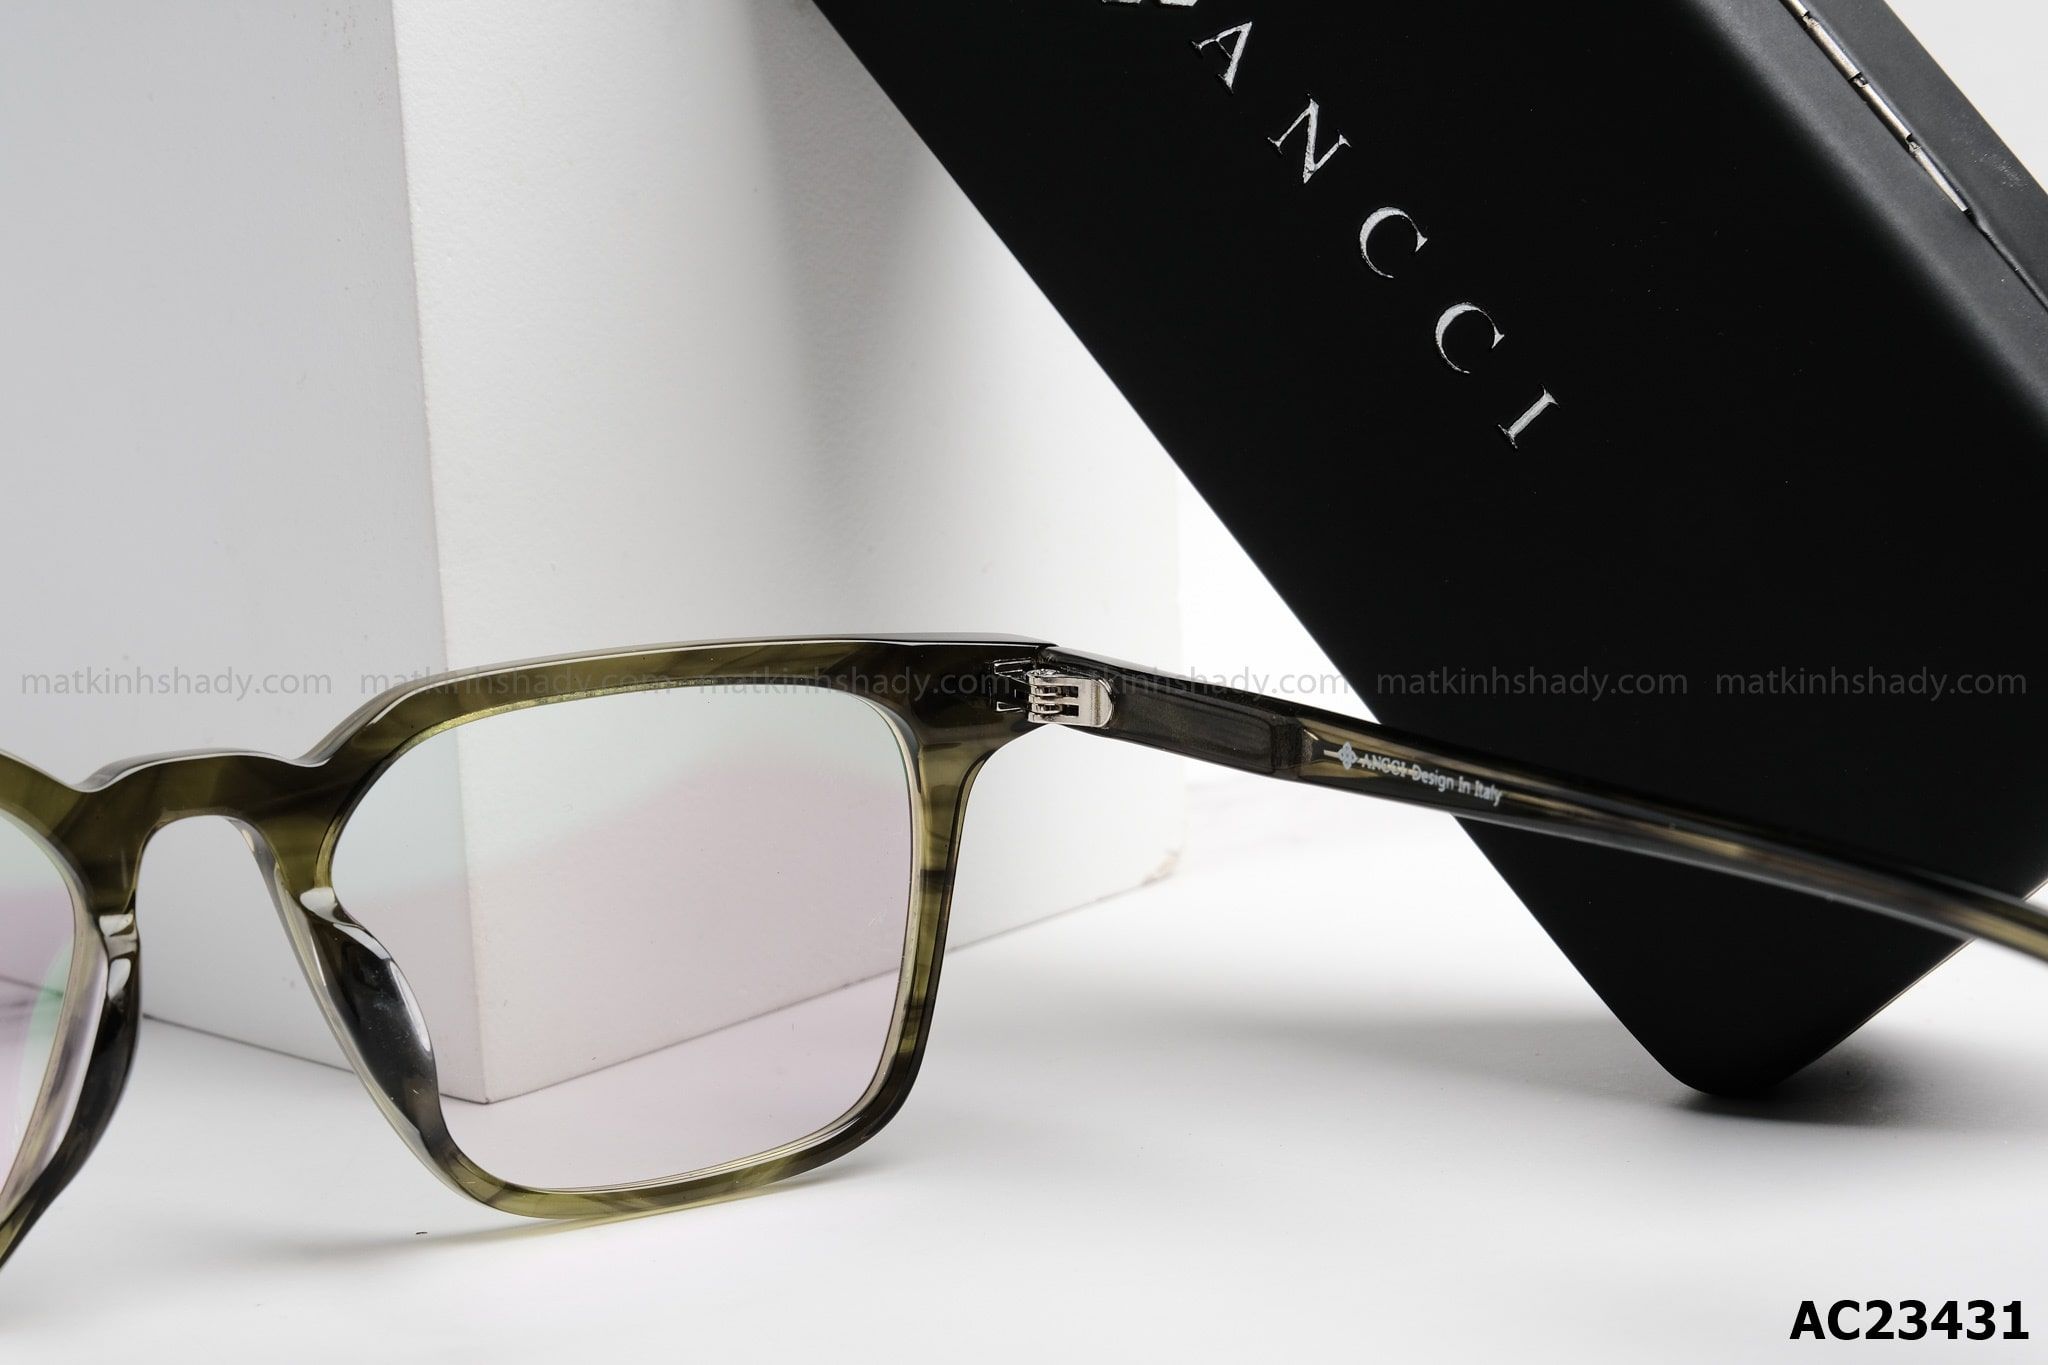  ANCCI Eyewear - Glasses - AC23431 